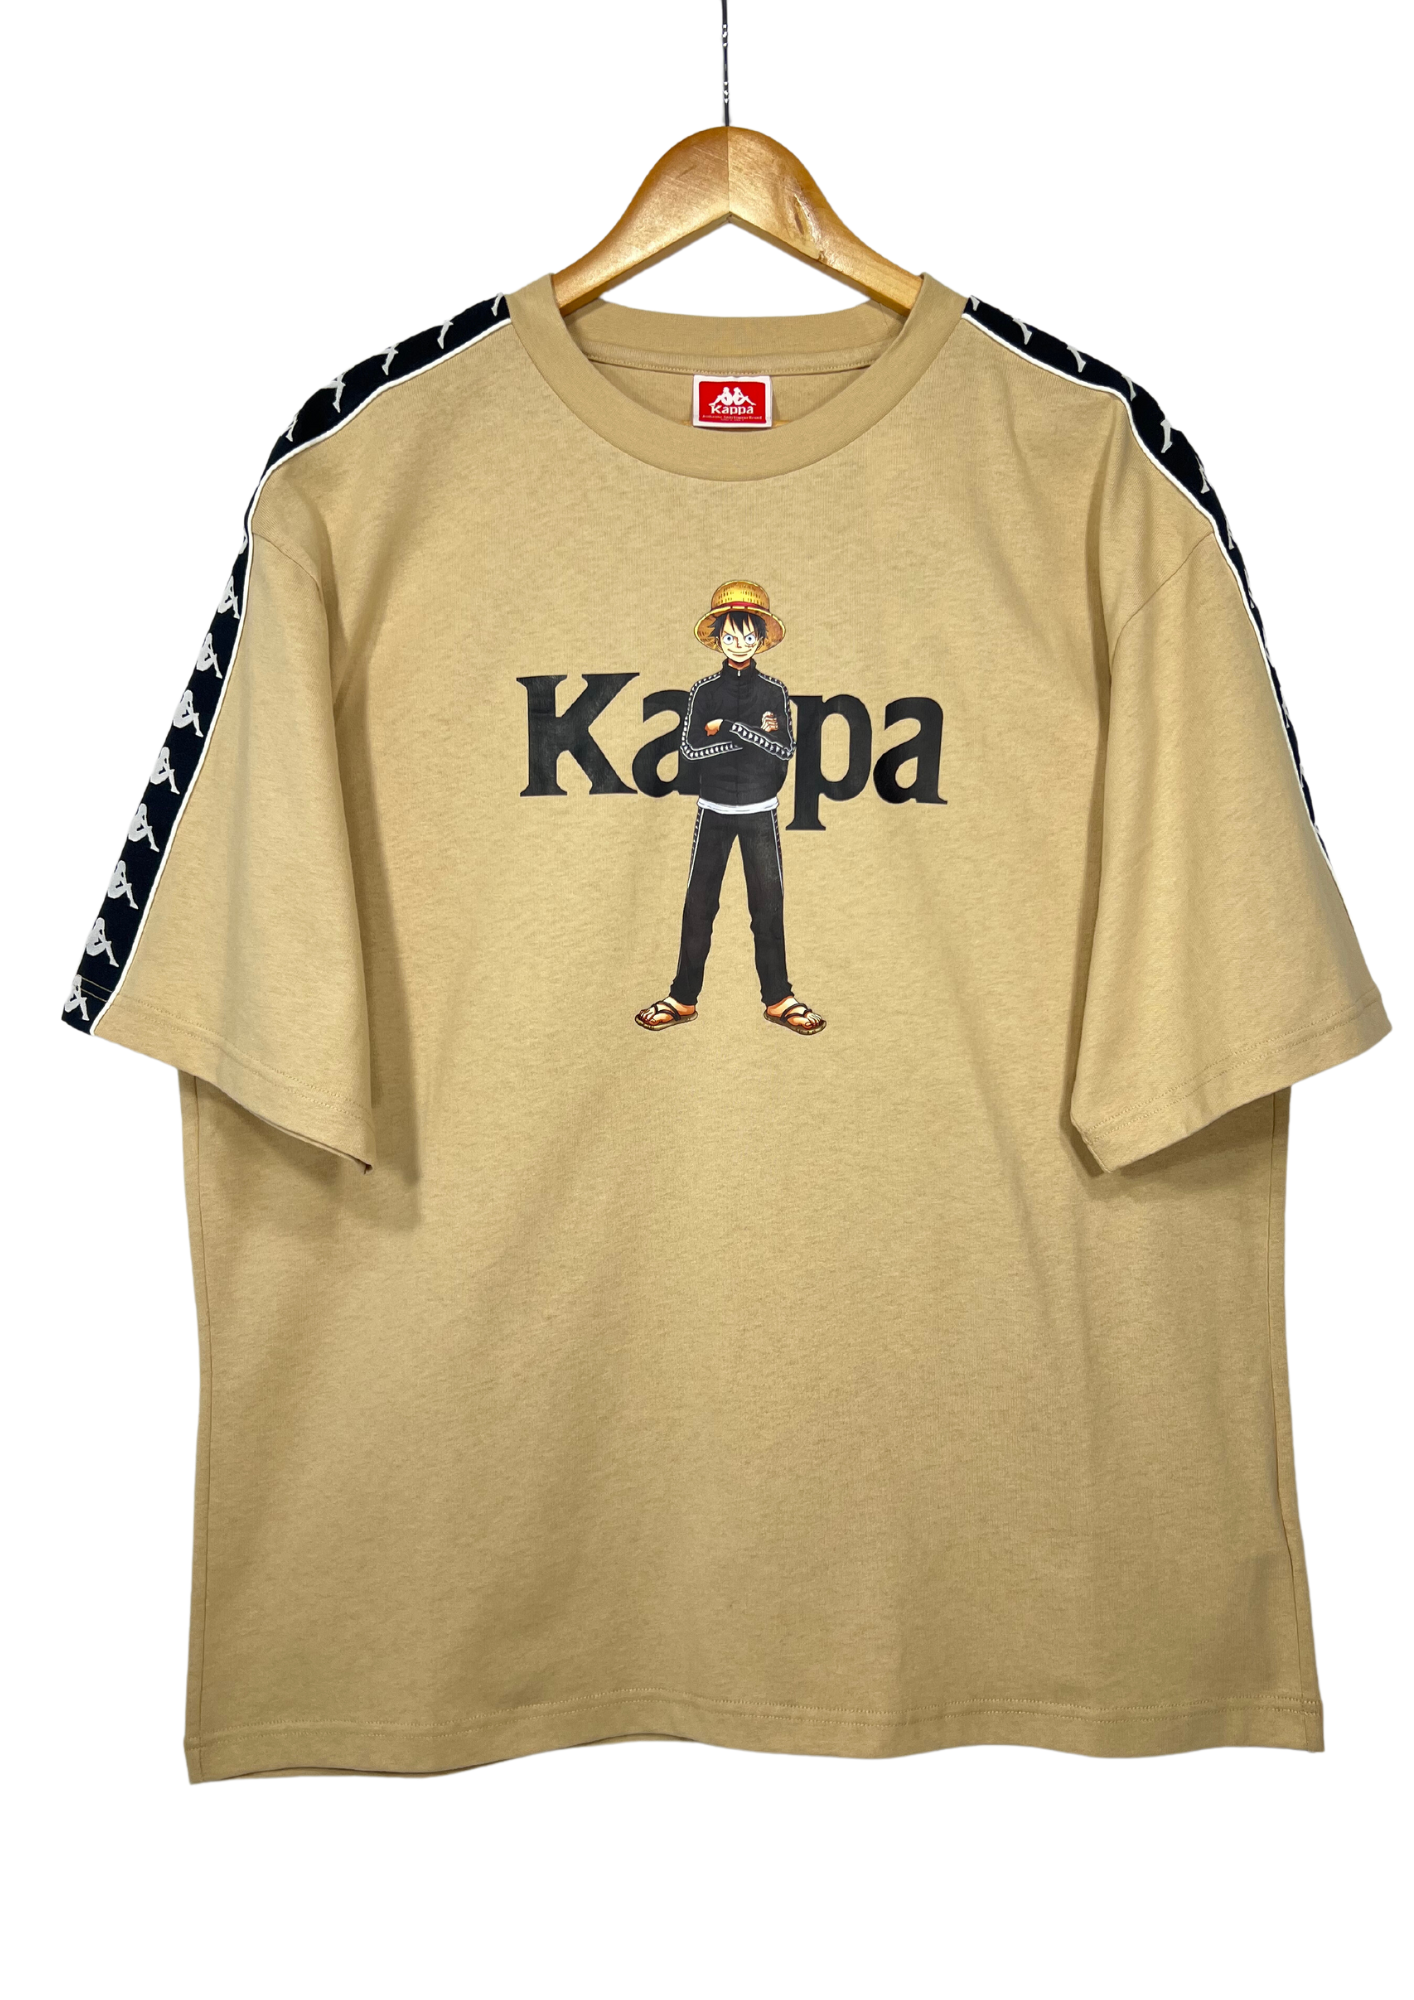 2020 One Piece x Kappa Luffy T-shirt